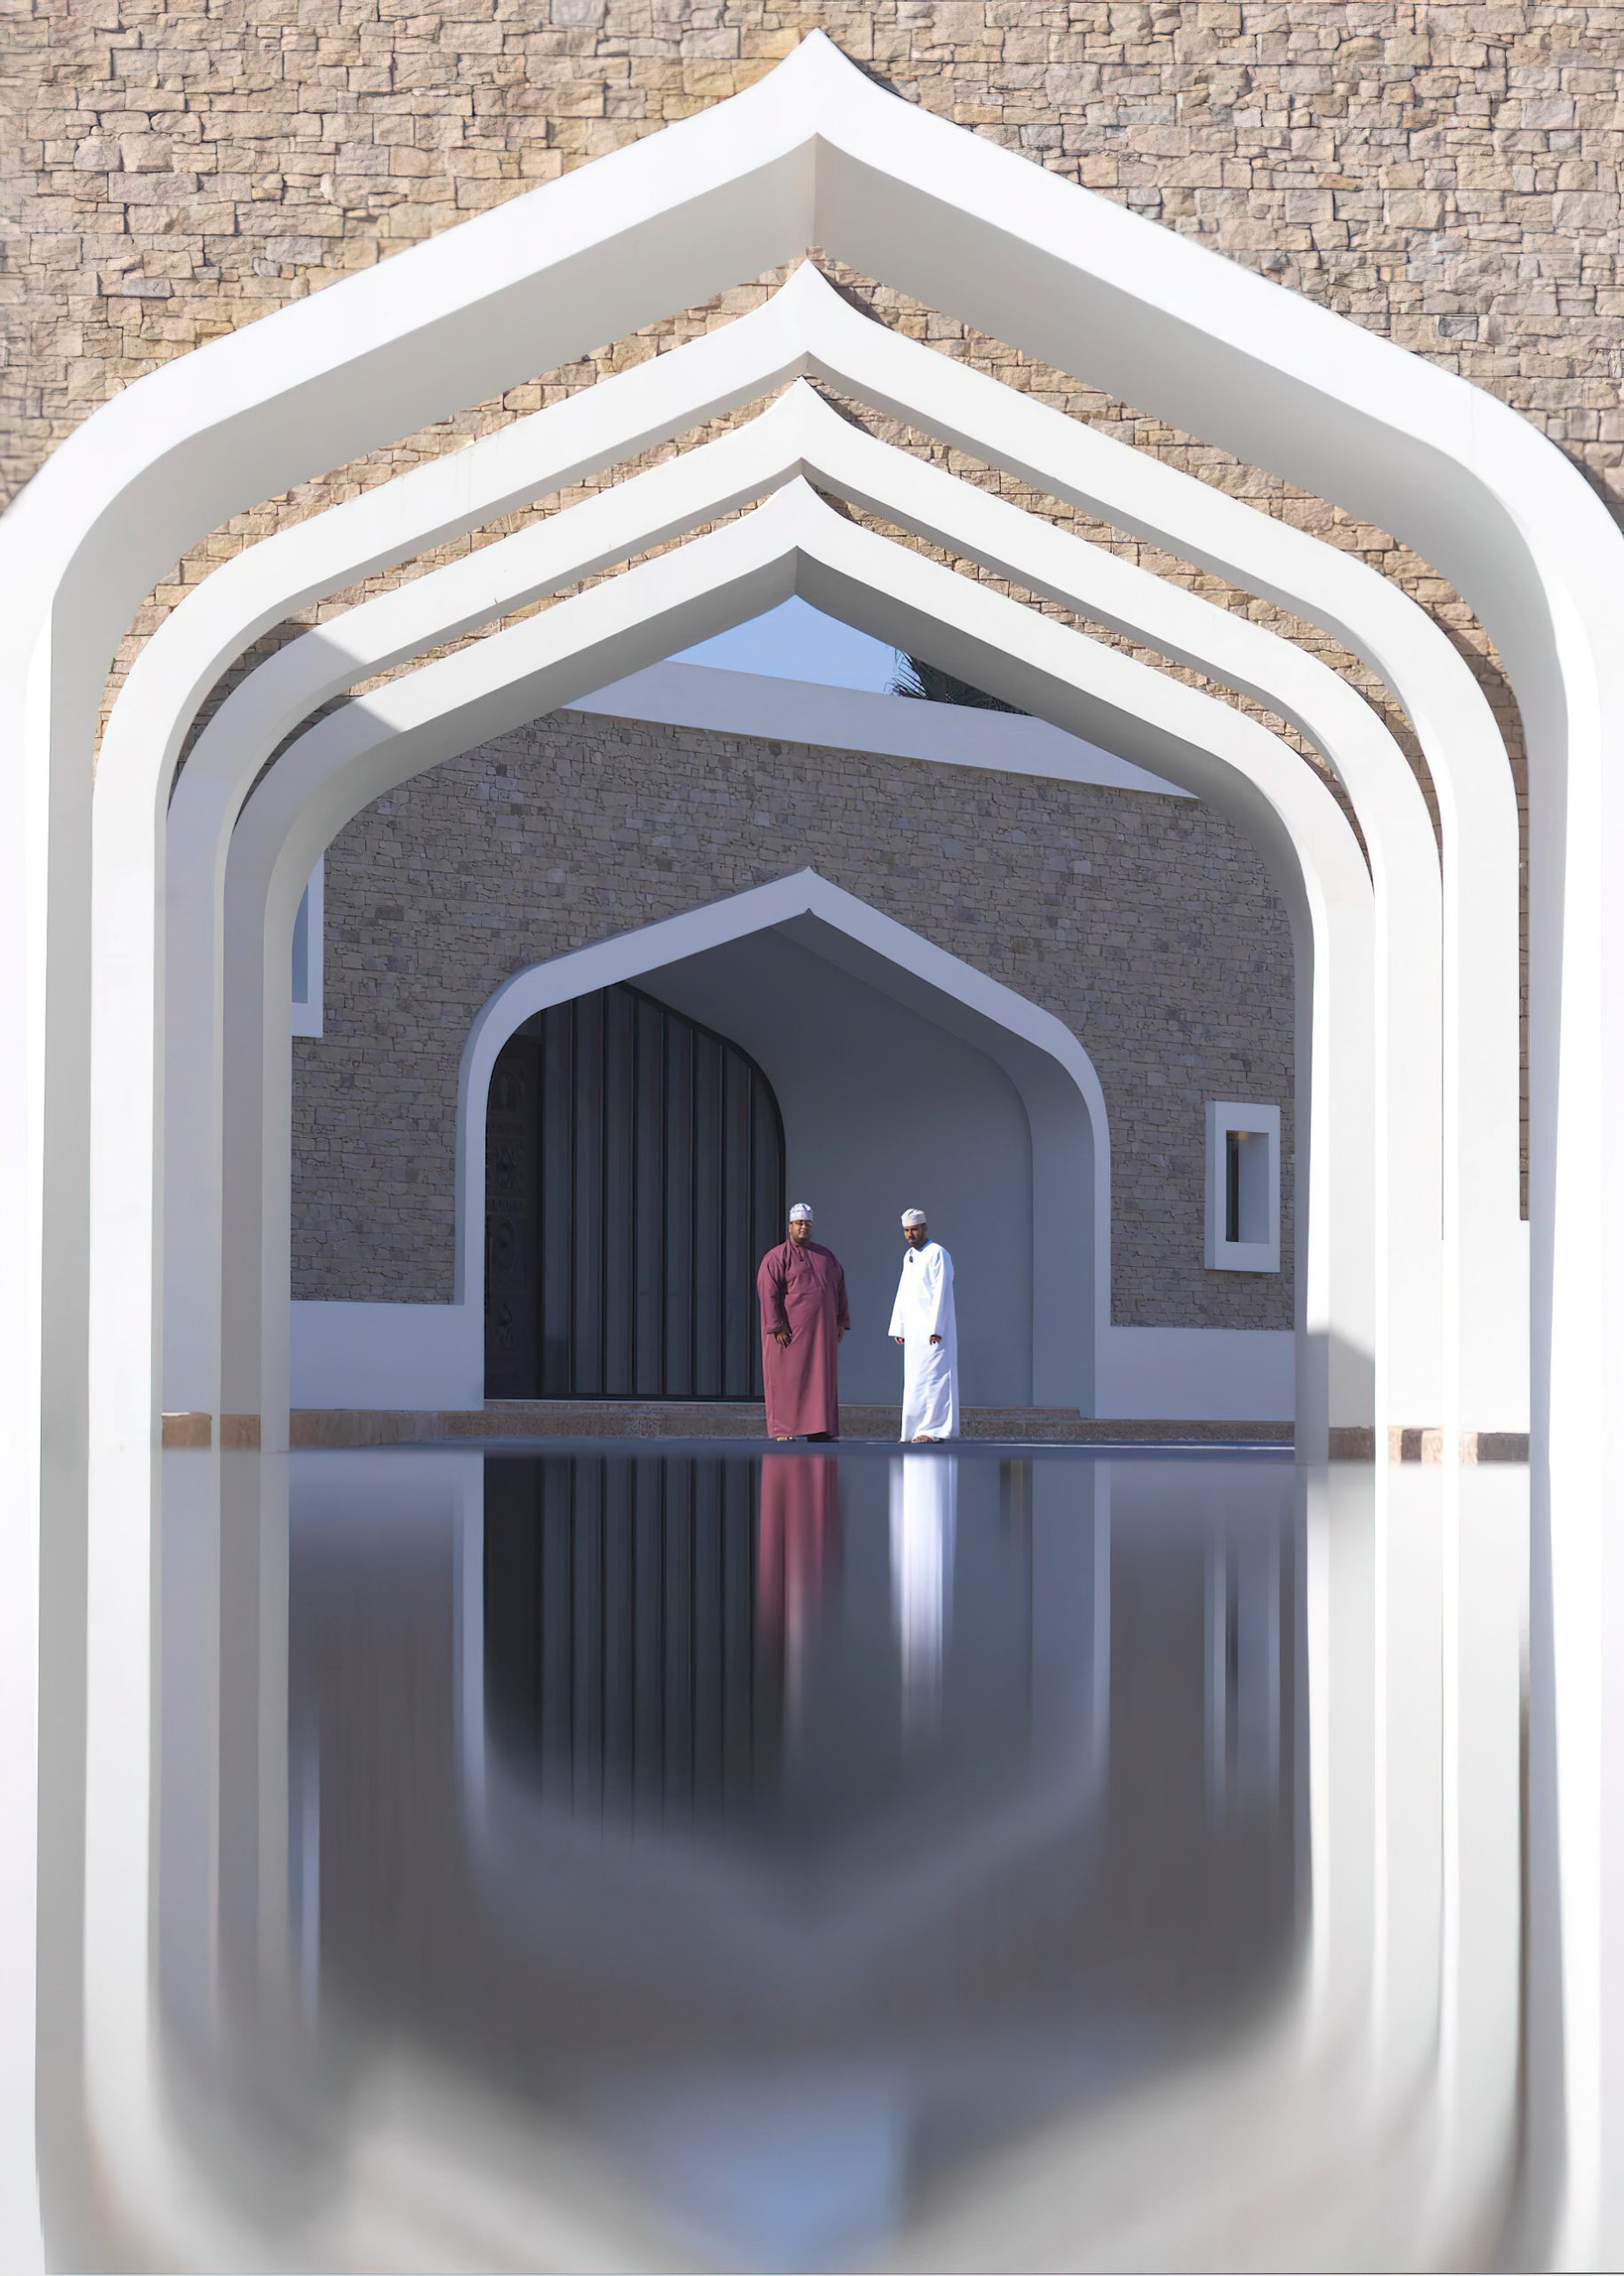 Al Baleed Resort Salalah by Anantara – Oman – Hotel Entrance